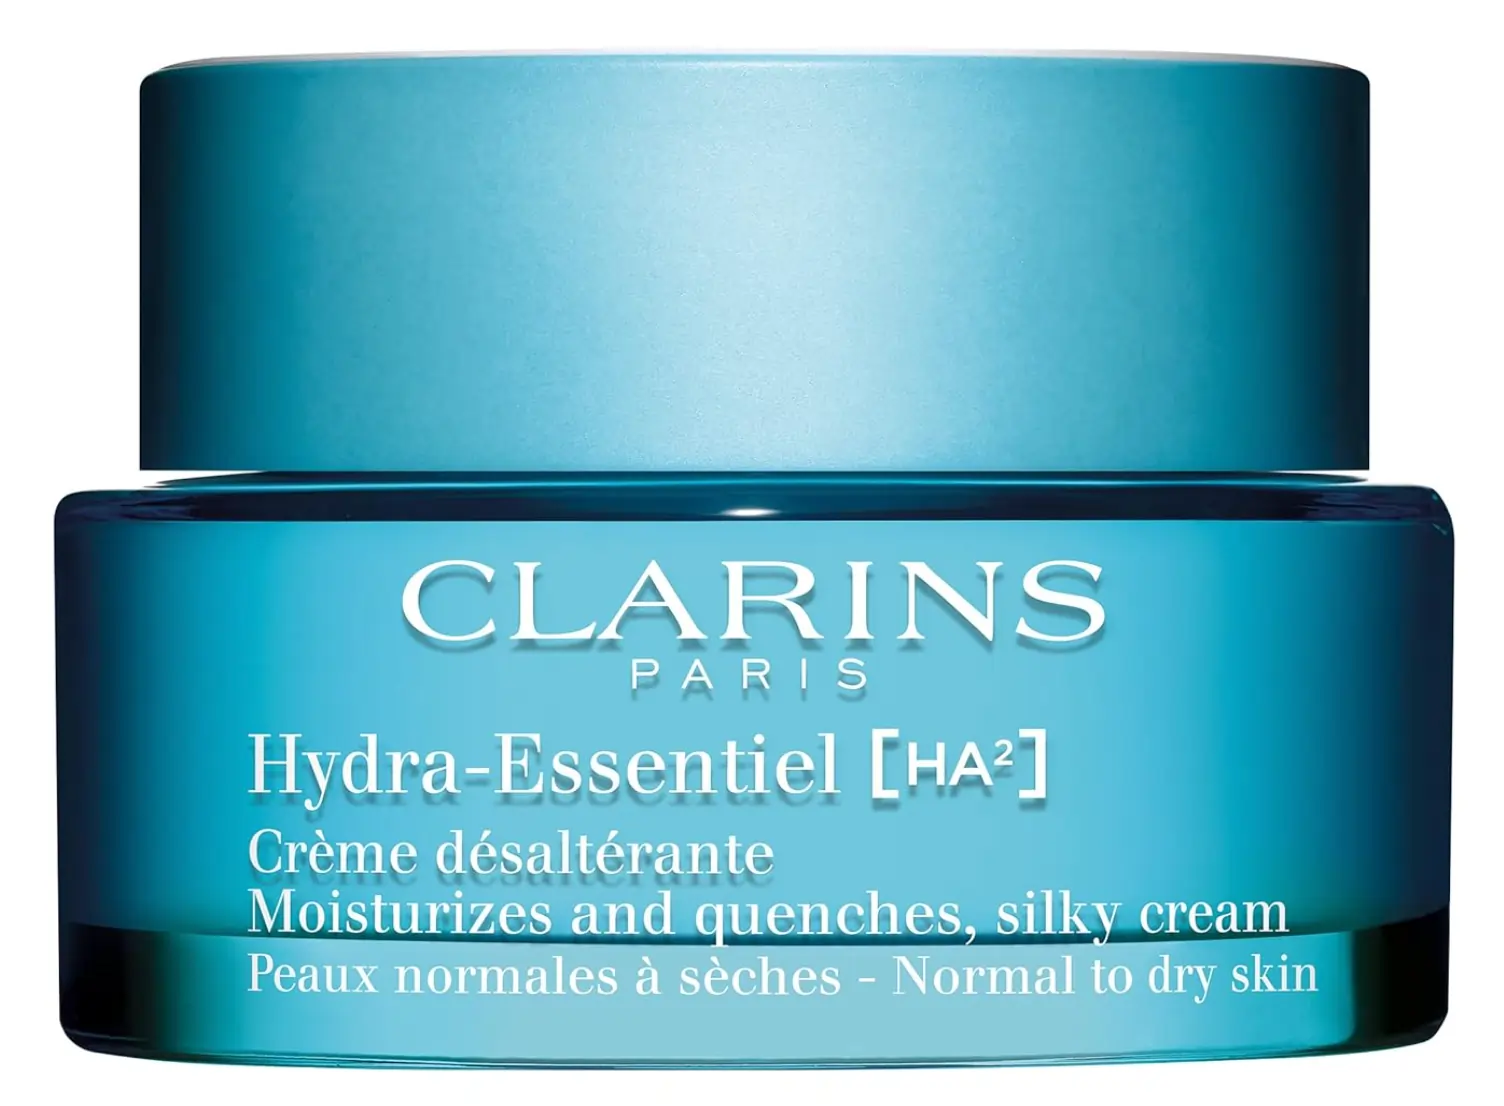 Hydra Essentiel Cream by Clarins, the best luxury French moisturizer.